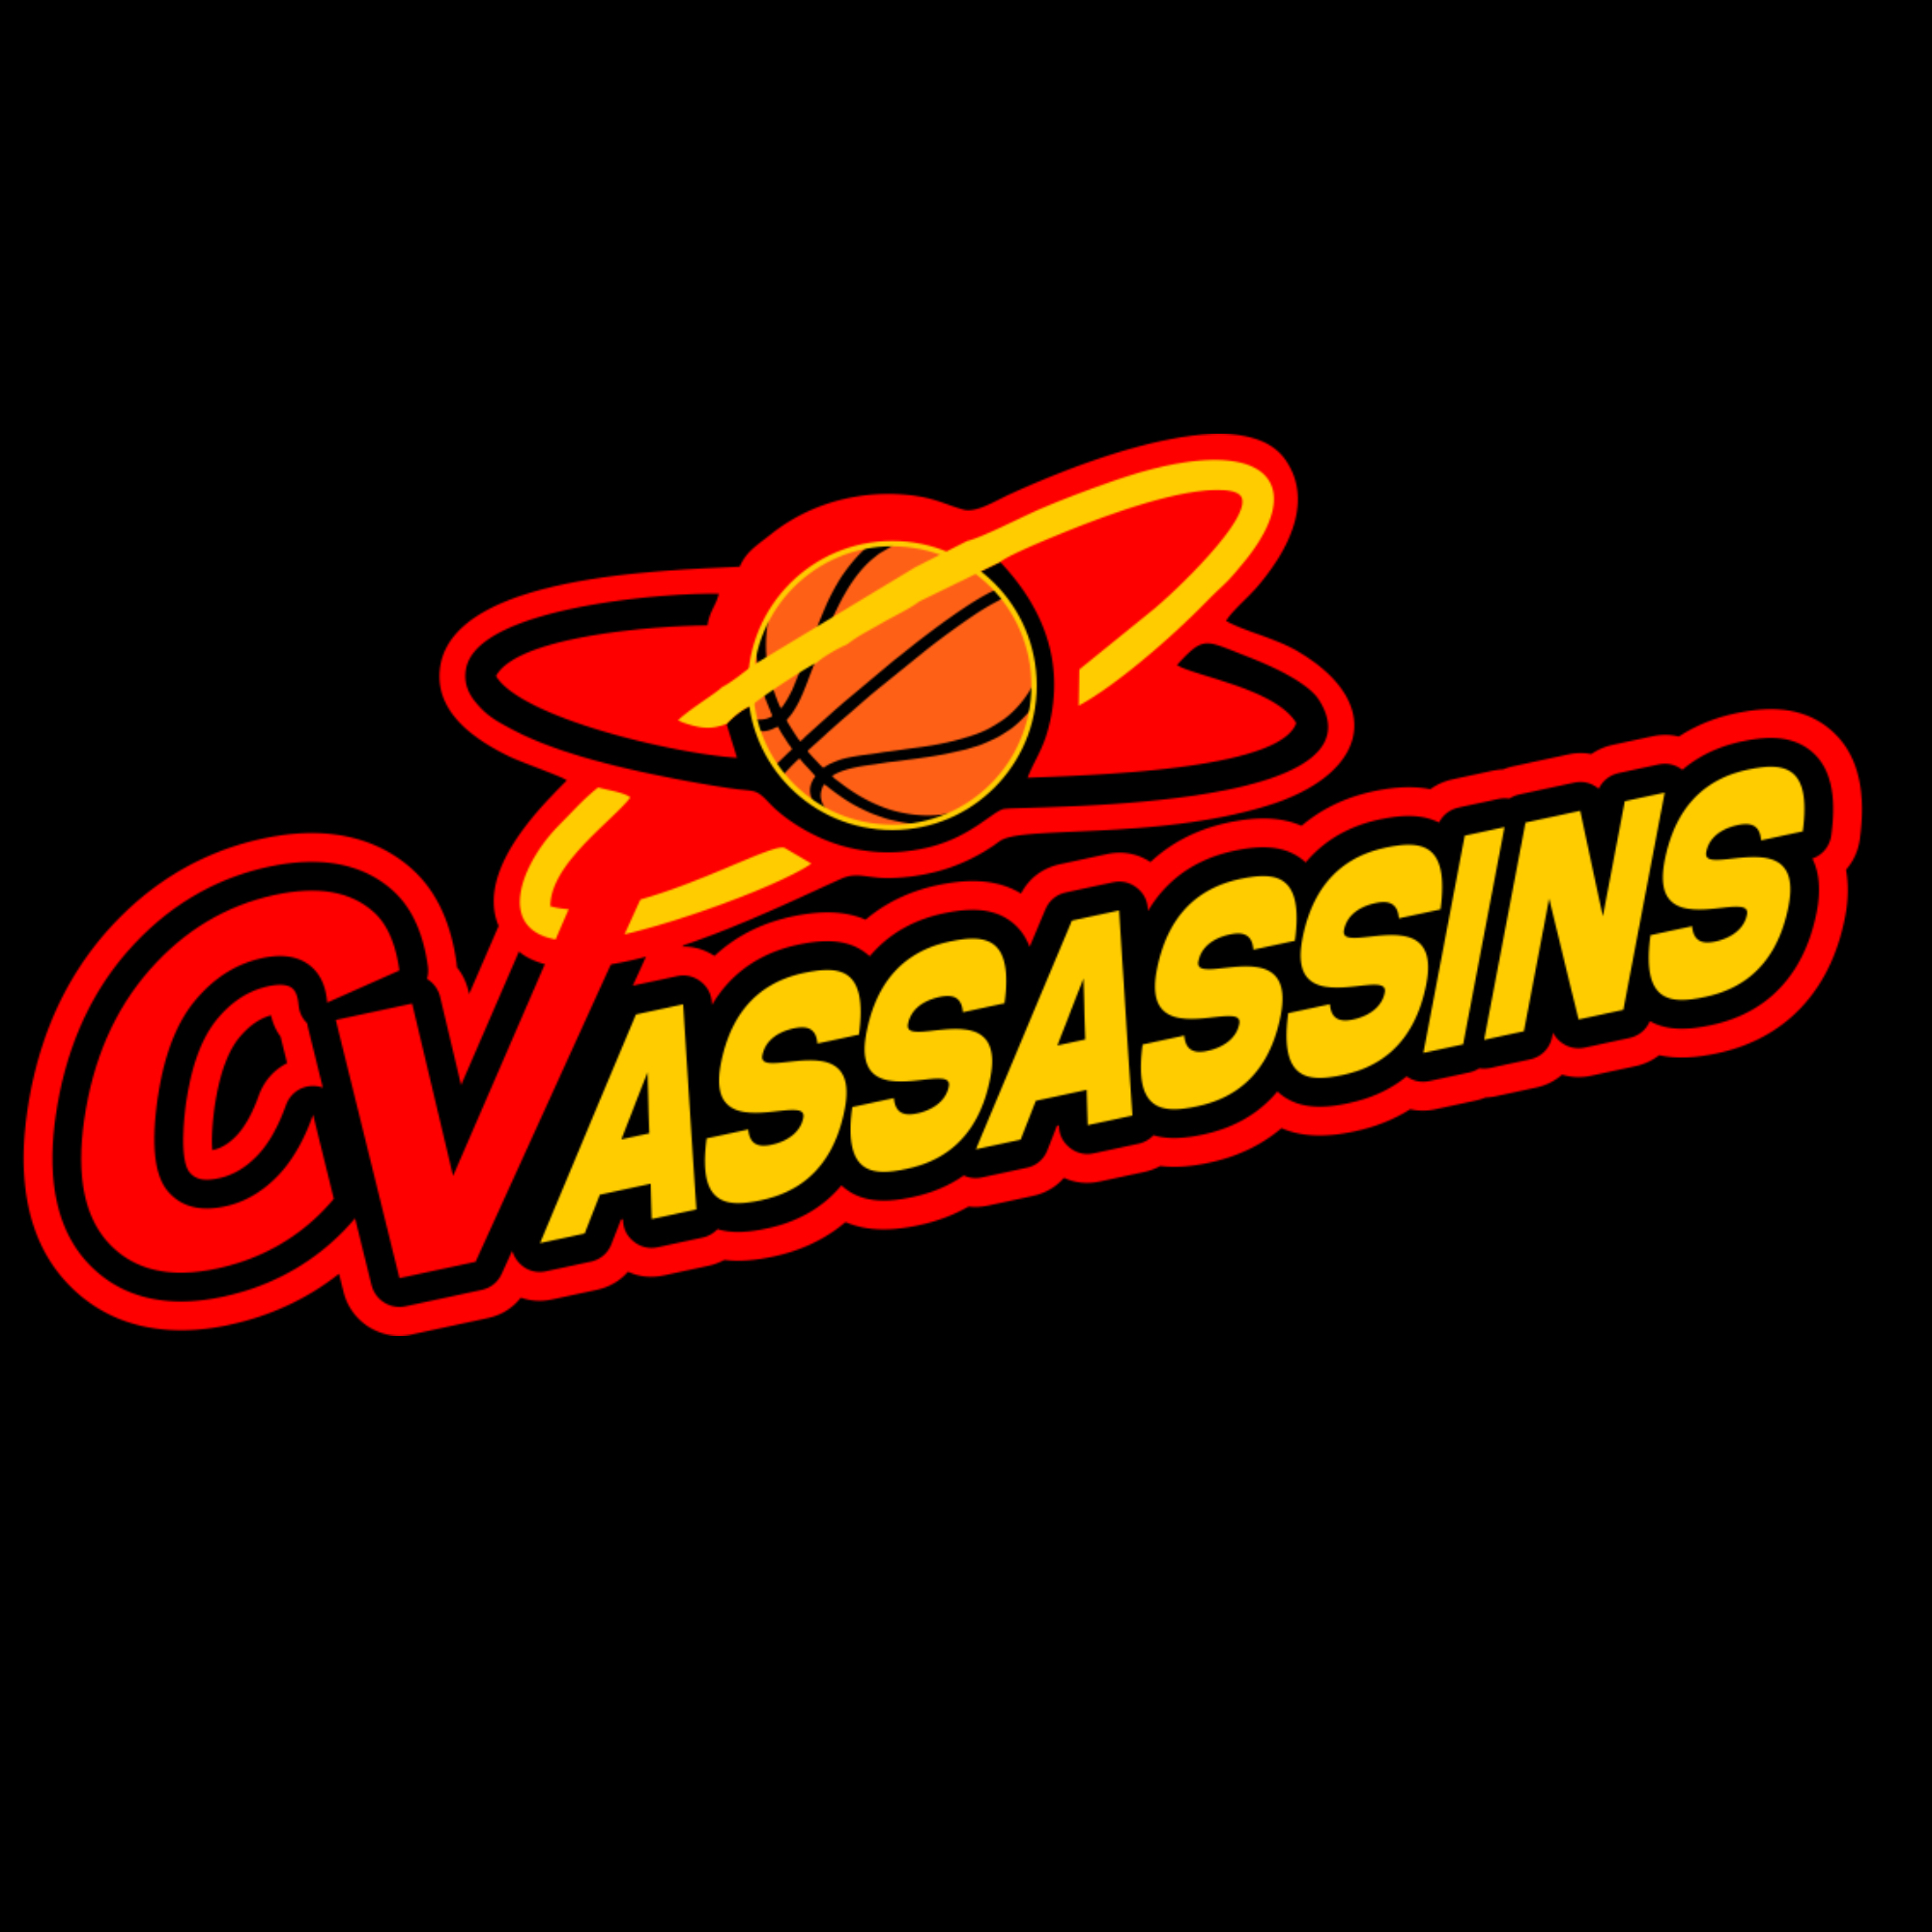 Organization logo for CV ASSASSINS